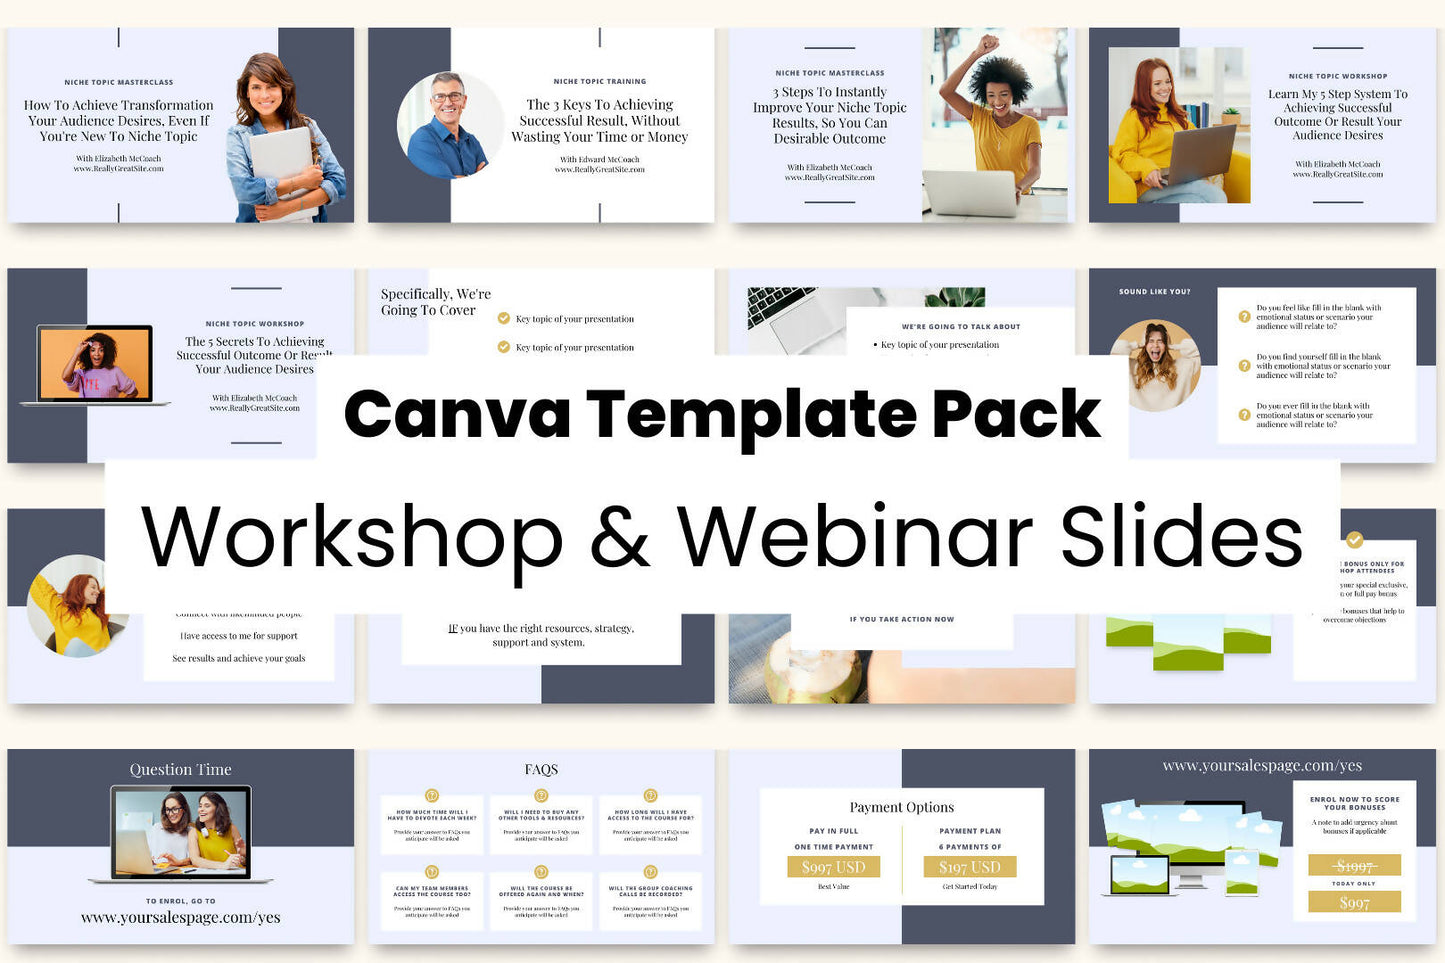 Workshop & Webinar Slide Deck Canva Template Pack